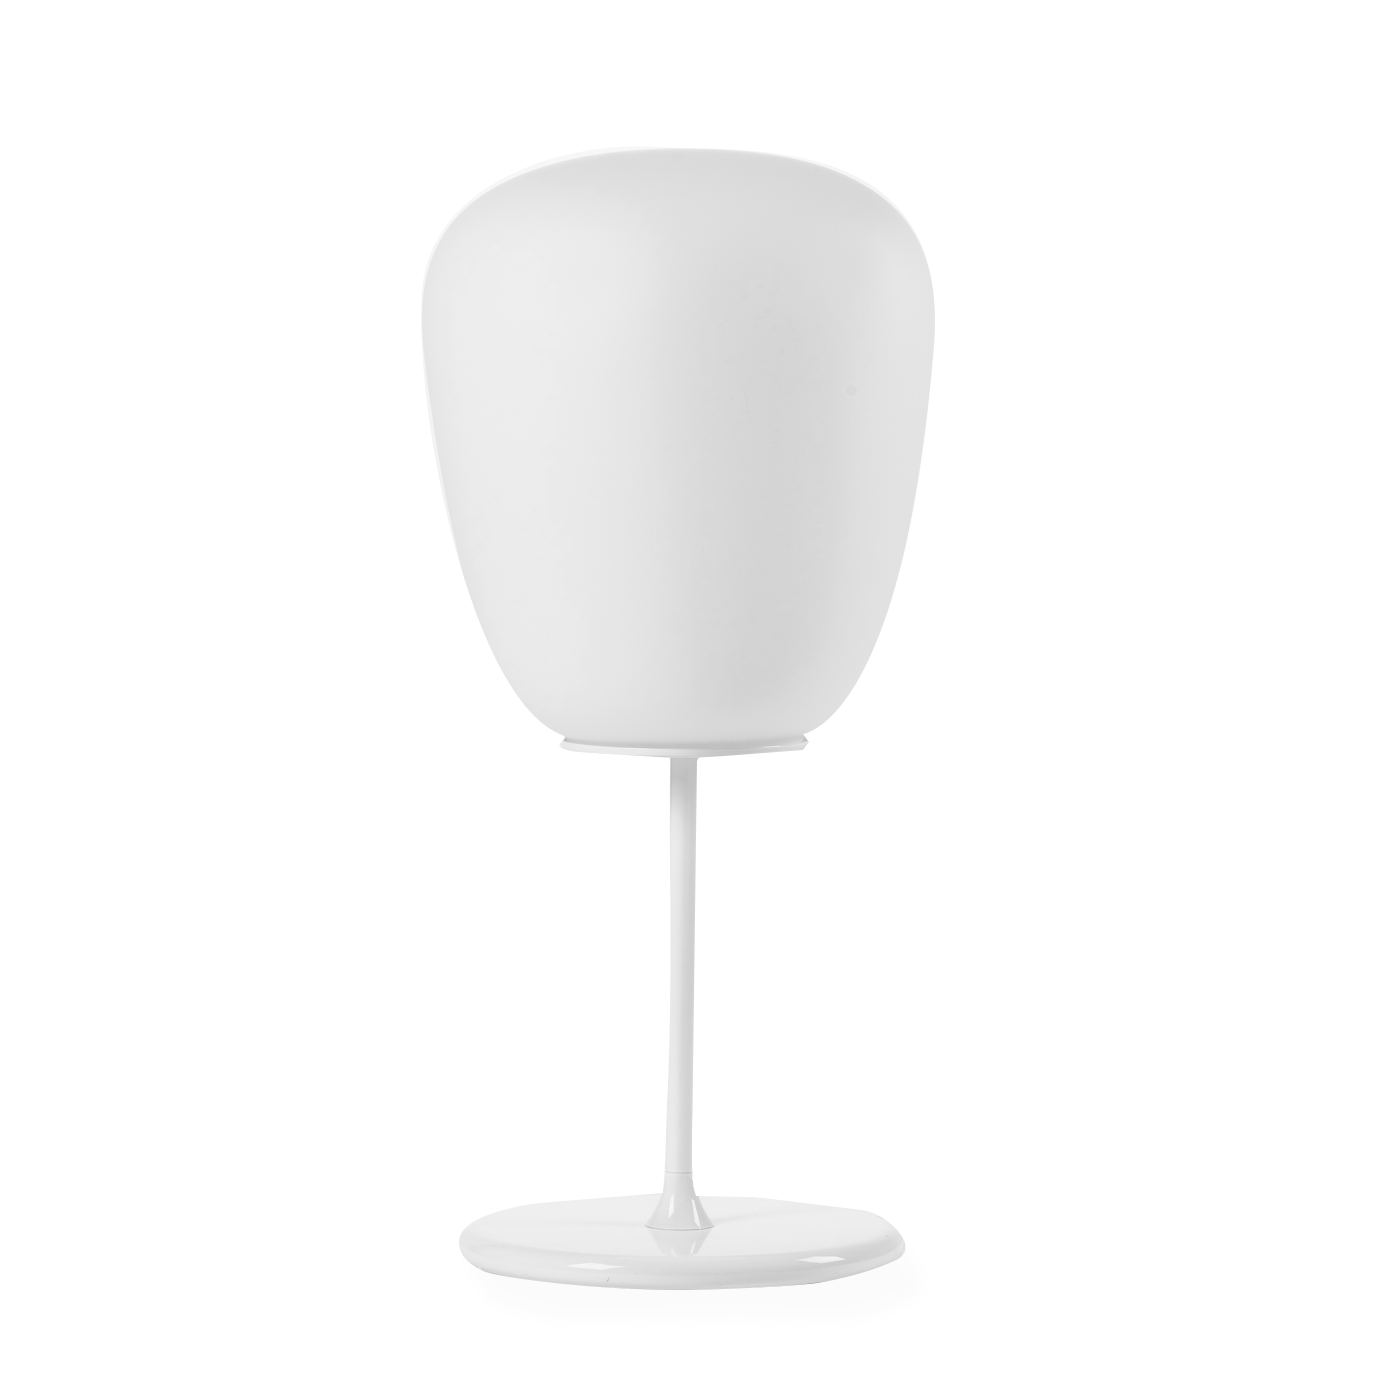 Настольный светильник Lumi Mochi диаметр 33